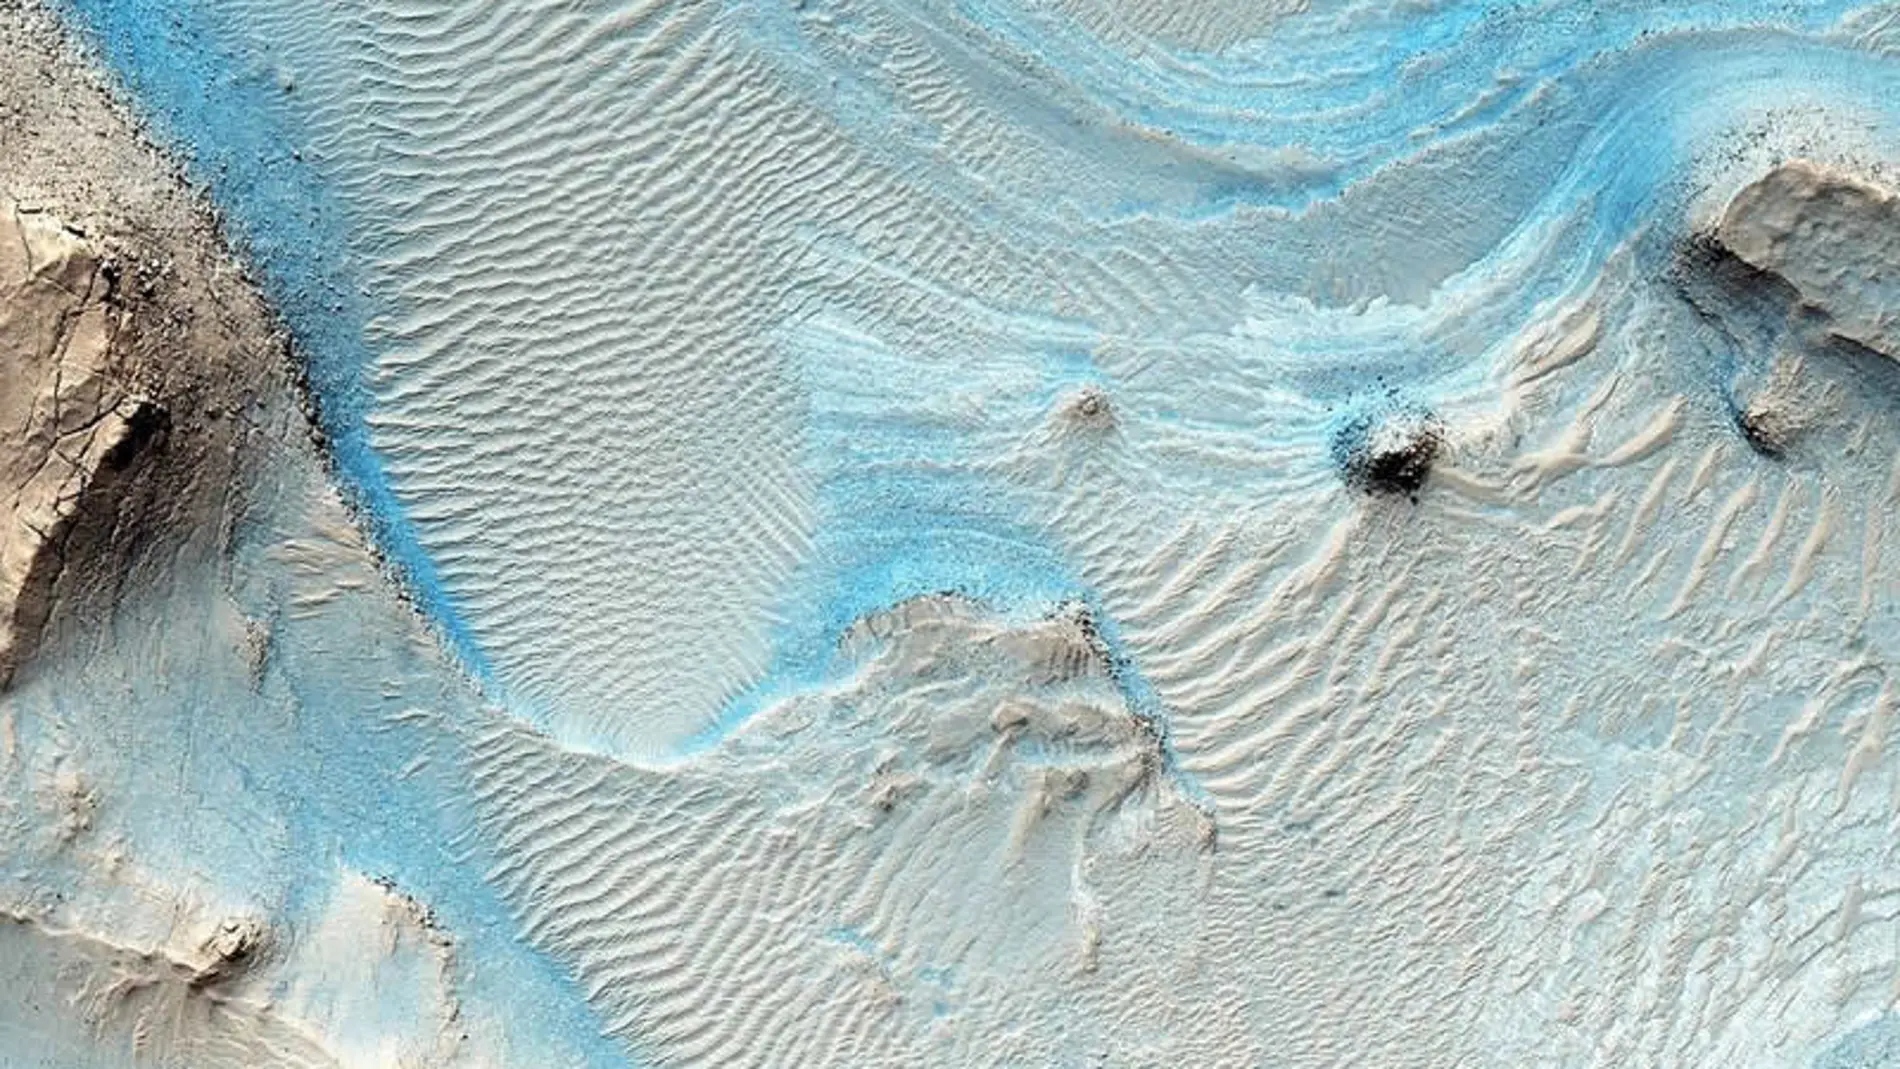 Imagen de Nili Fossae, donde puede apreciarse un lecho de roca en capas horizontales como estrías en los sedimentos de tonos claros en el suelo de un cañón cerca de Syrtis Major